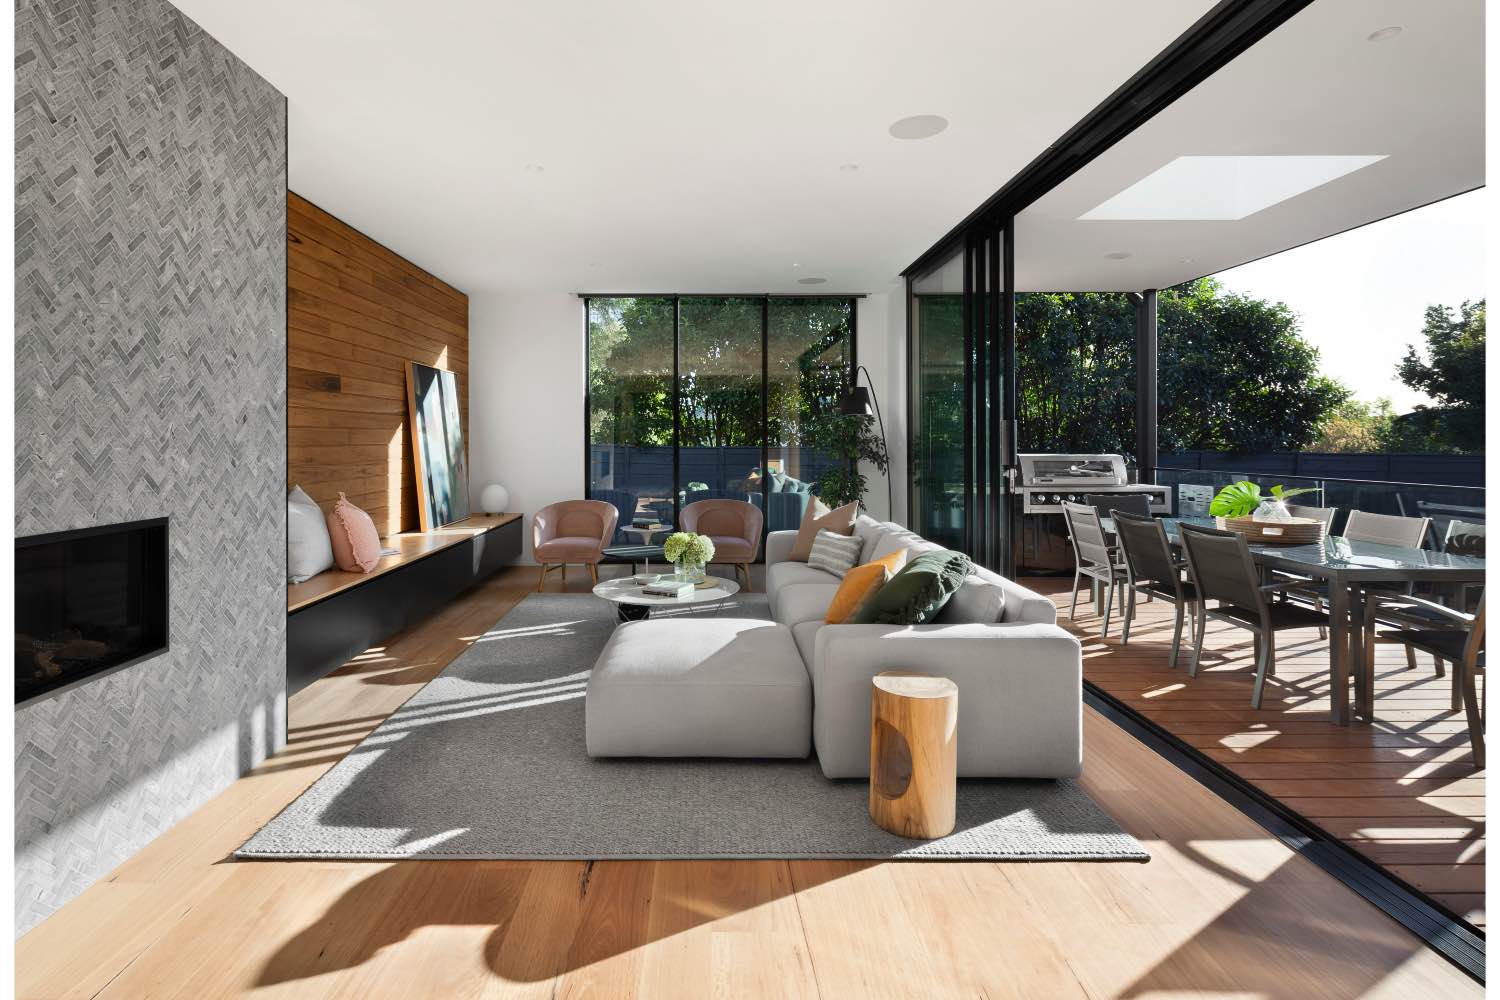 diseño de sala de estar moderna con sofá gris, chimenea y patio con comedor